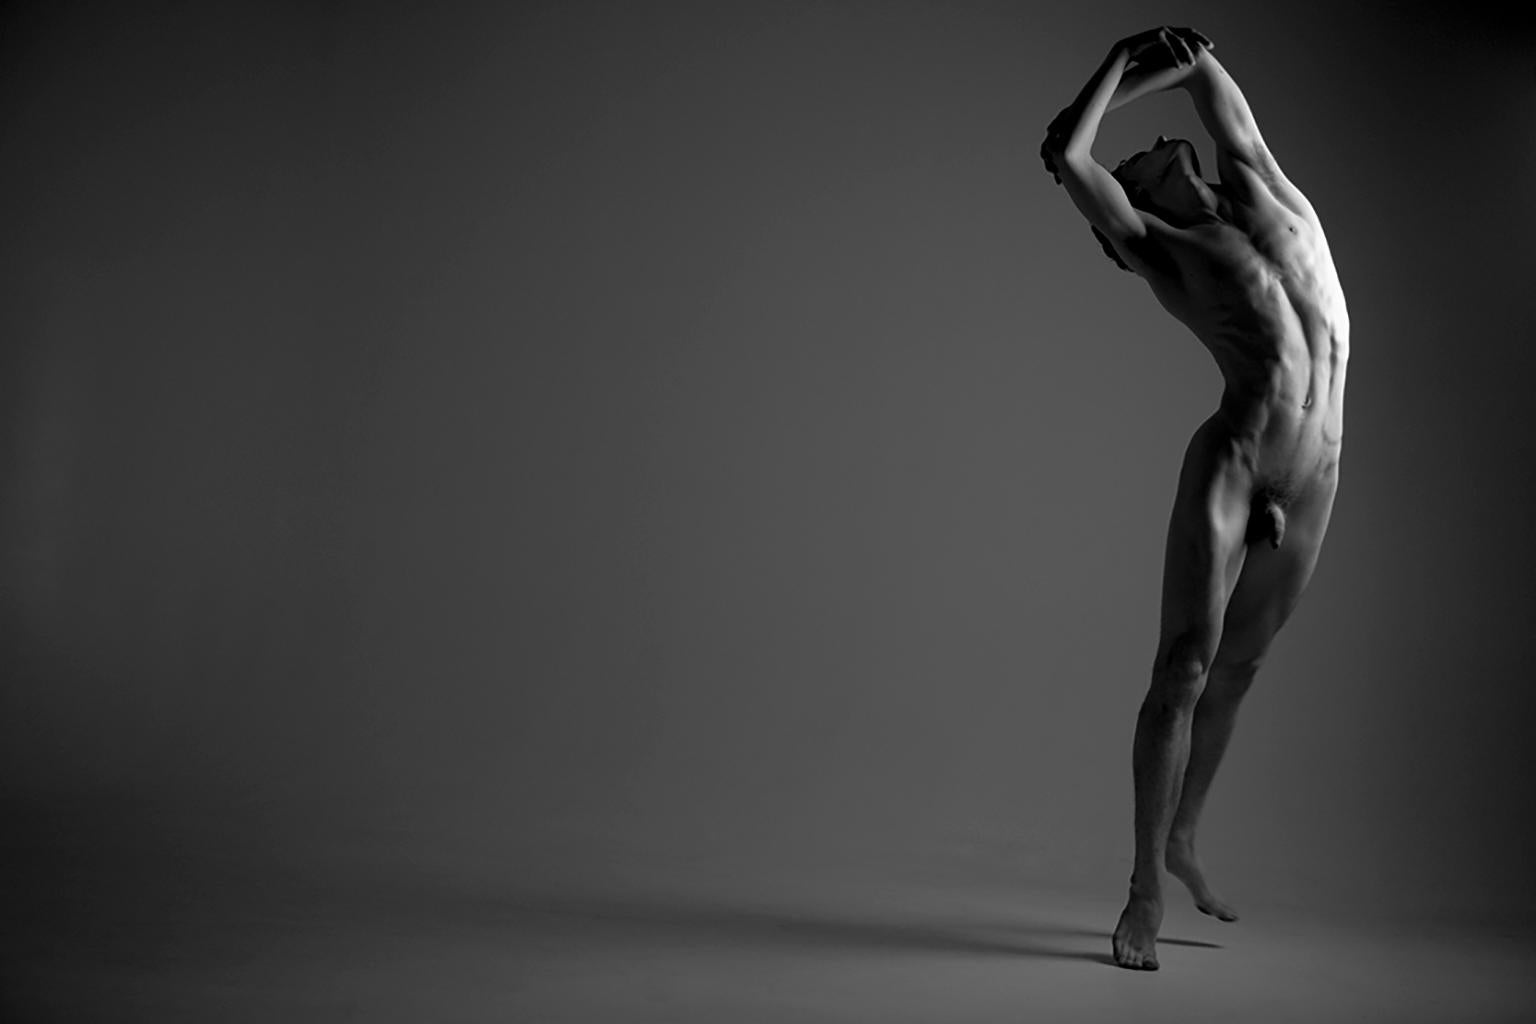 Bailarín II. Le Bailarín, série. Danseur nu masculin. Photographie en noir et blanc